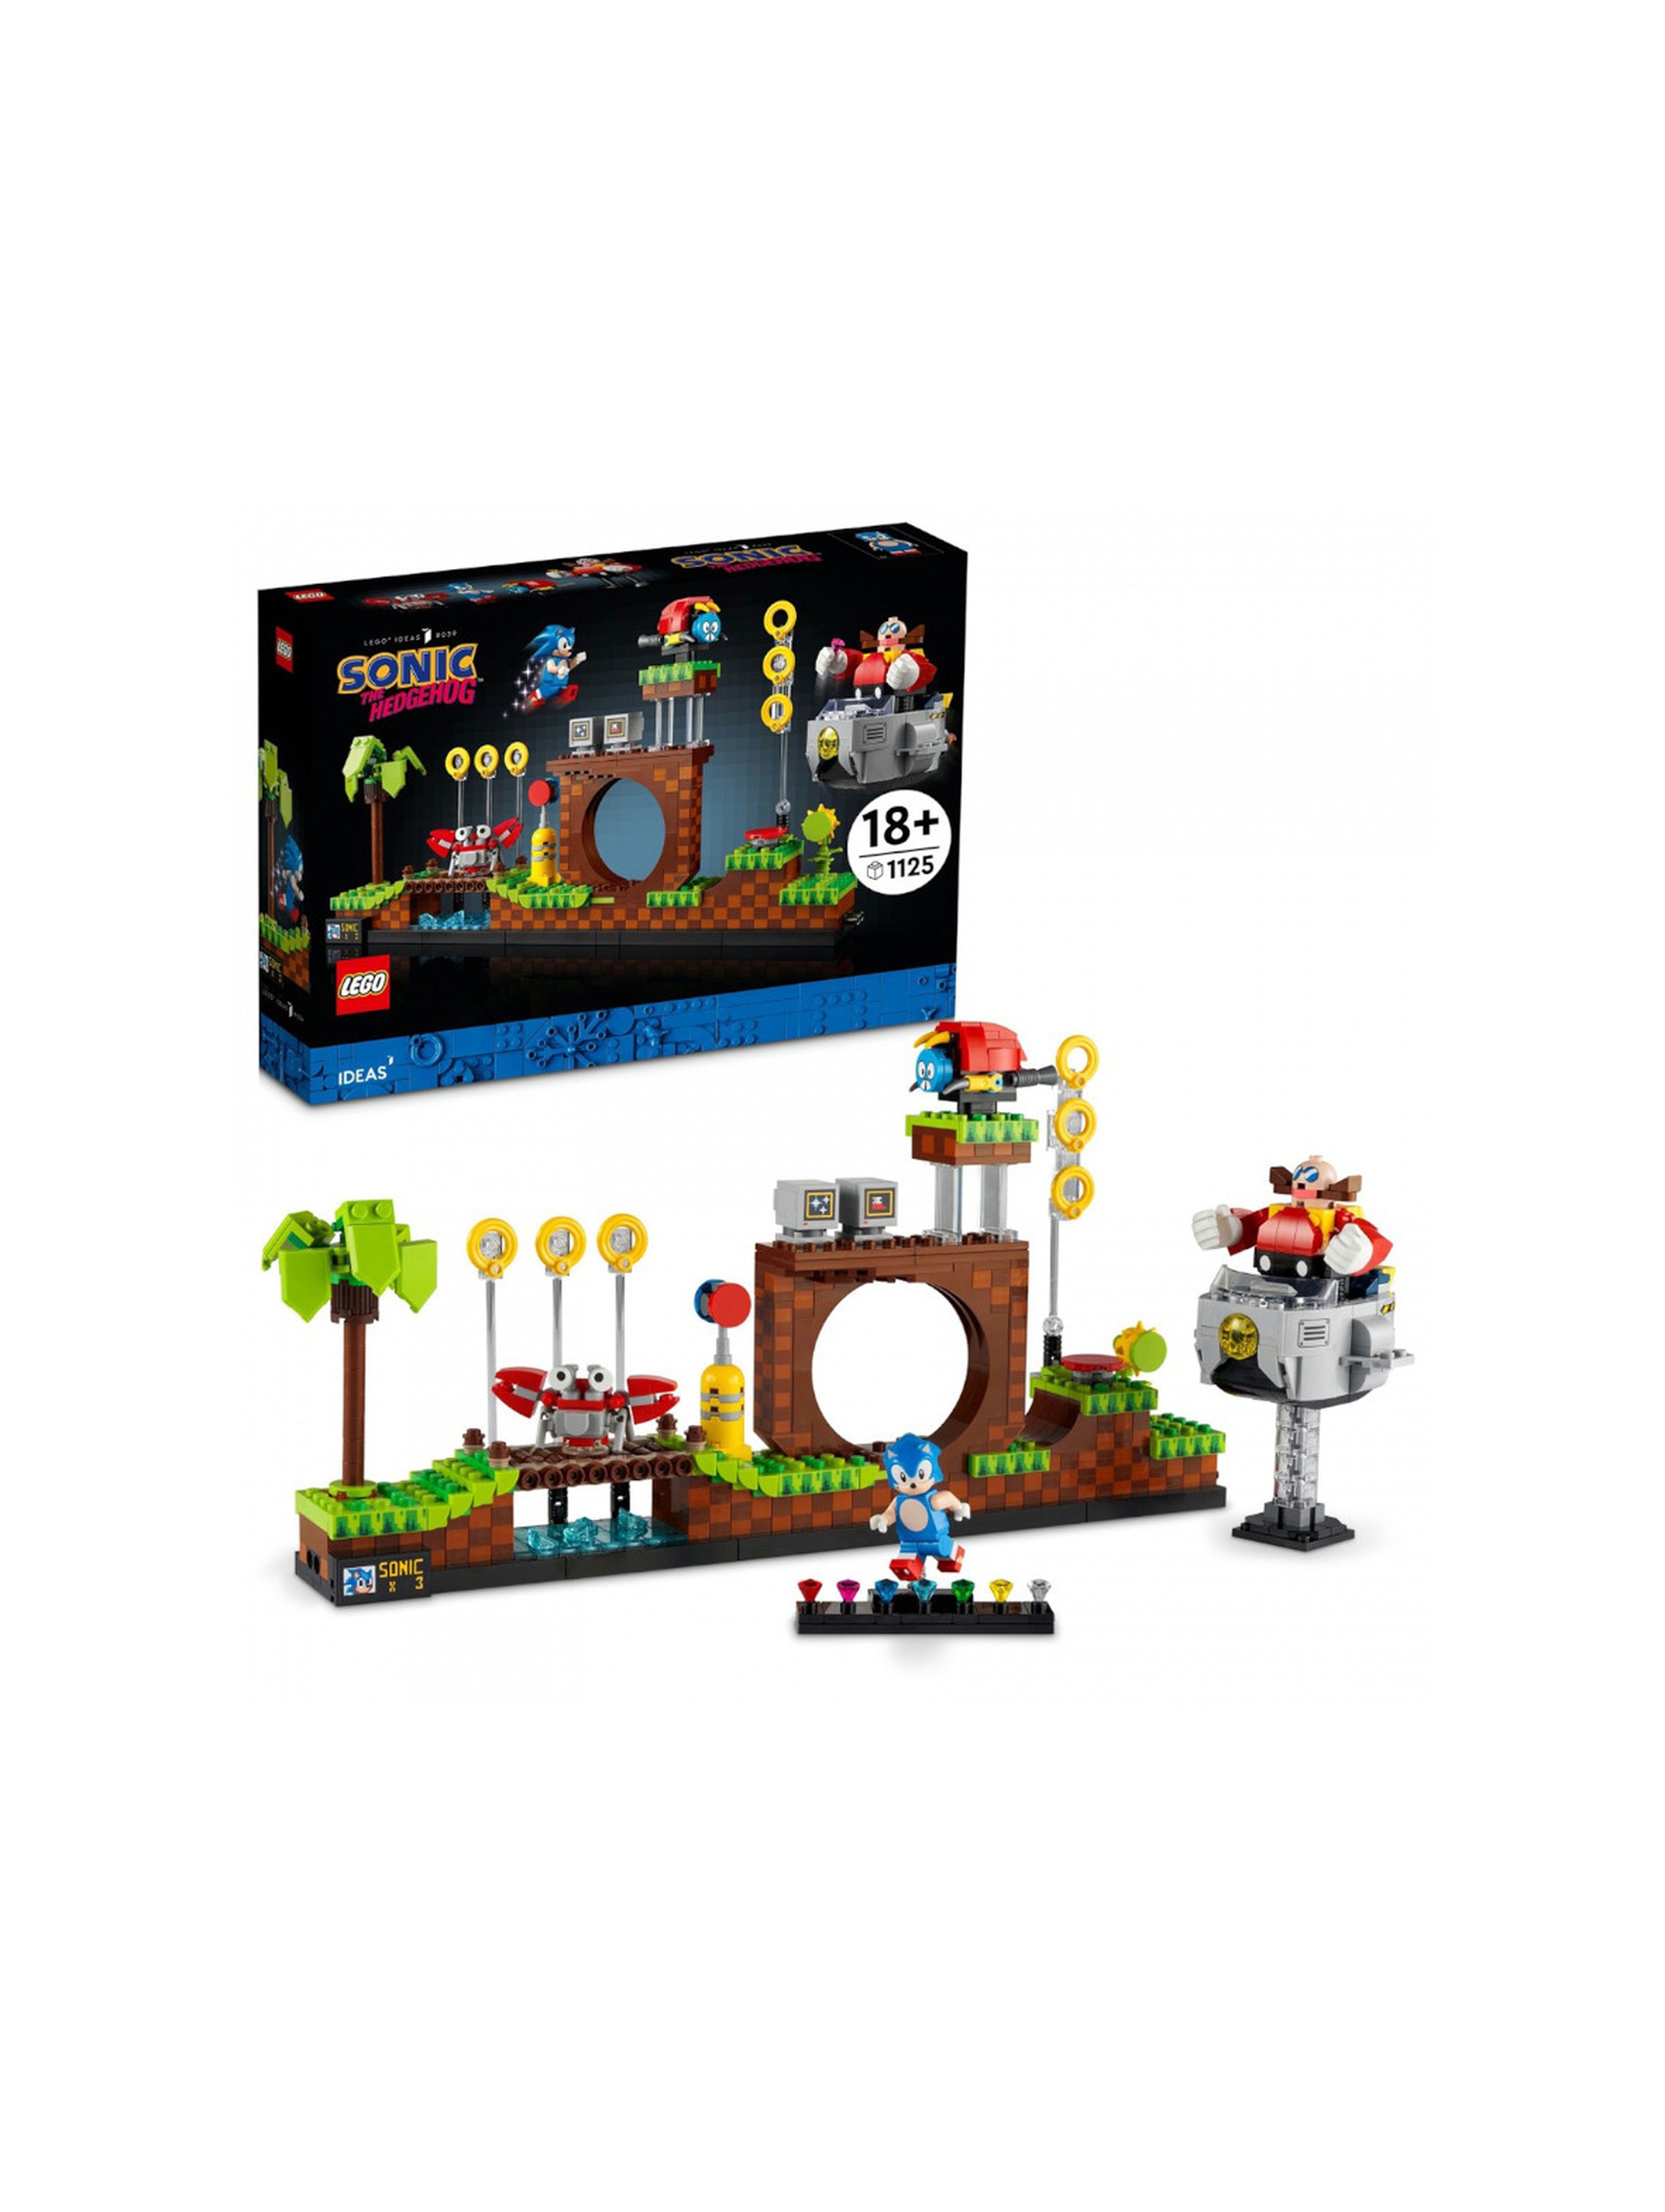 Klocki LEGO Ideas 21331 Sonic the Hedgehog - Strefa Zielonego Wzgórza - 1125 elementów, wiek 18 +